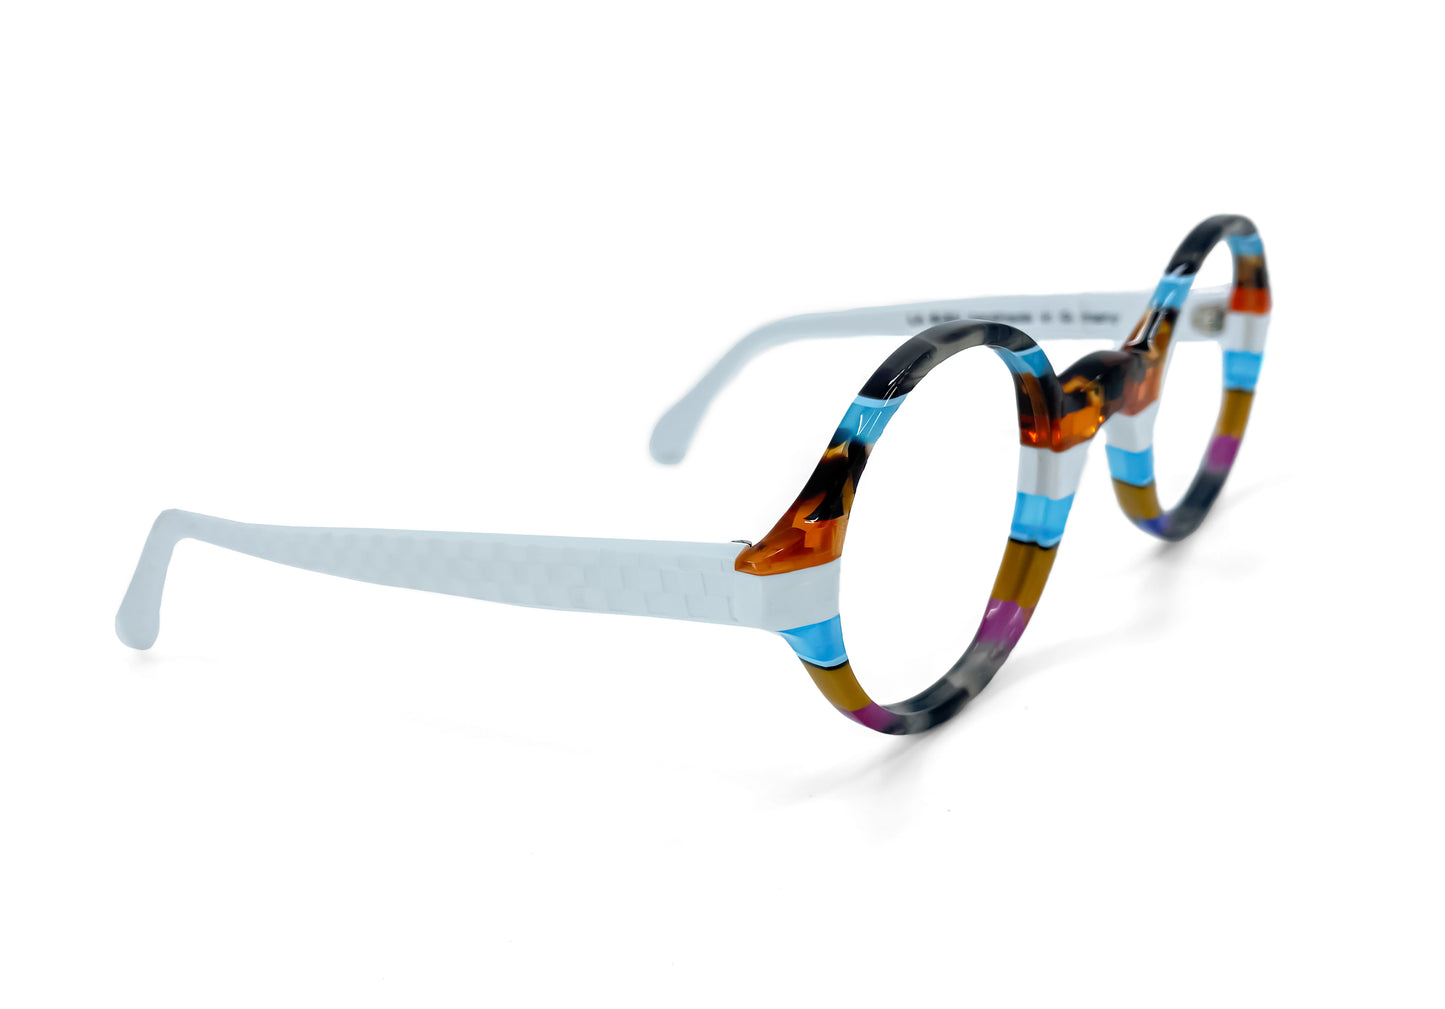 Round 579 by La Bleu Frames Glasses striped